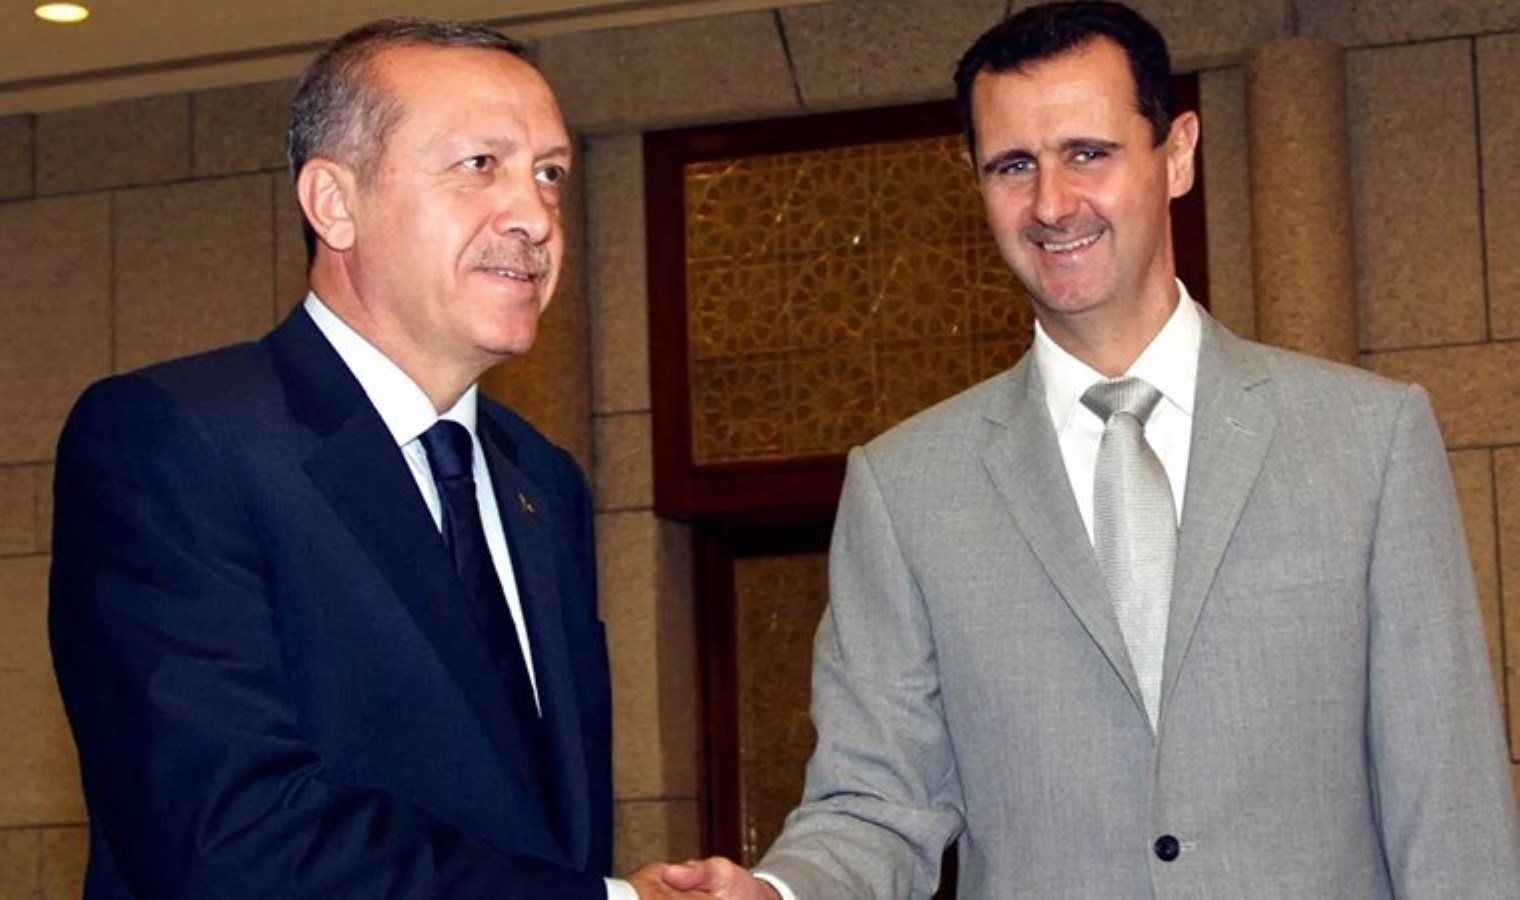 Yandaş gazeteden ‘istihbarat’ kulisi: ‘Erdoğan-Esad görüşmesi her an yapılabilir’